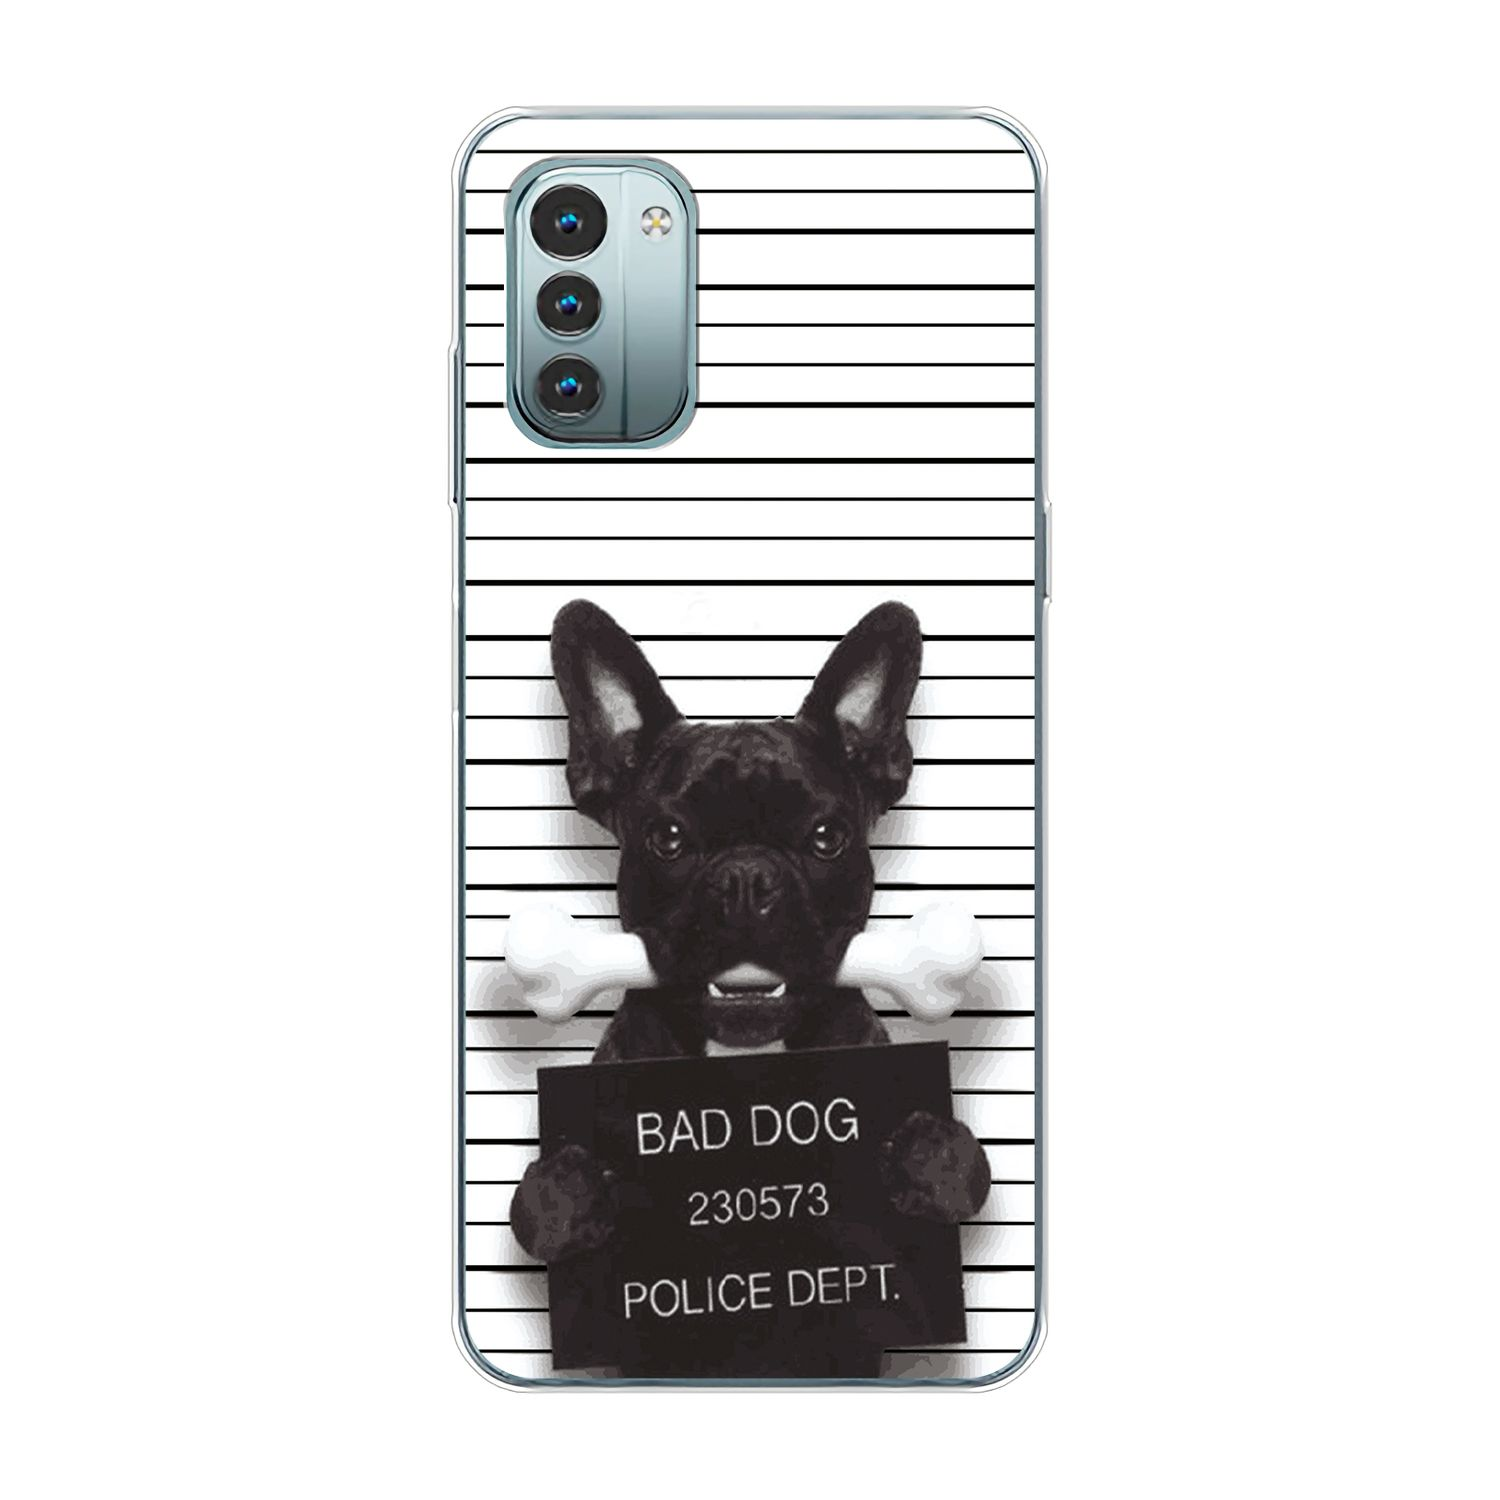 KÖNIG Bulldogge Nokia, G11, Dog Bad DESIGN Backcover, Case,